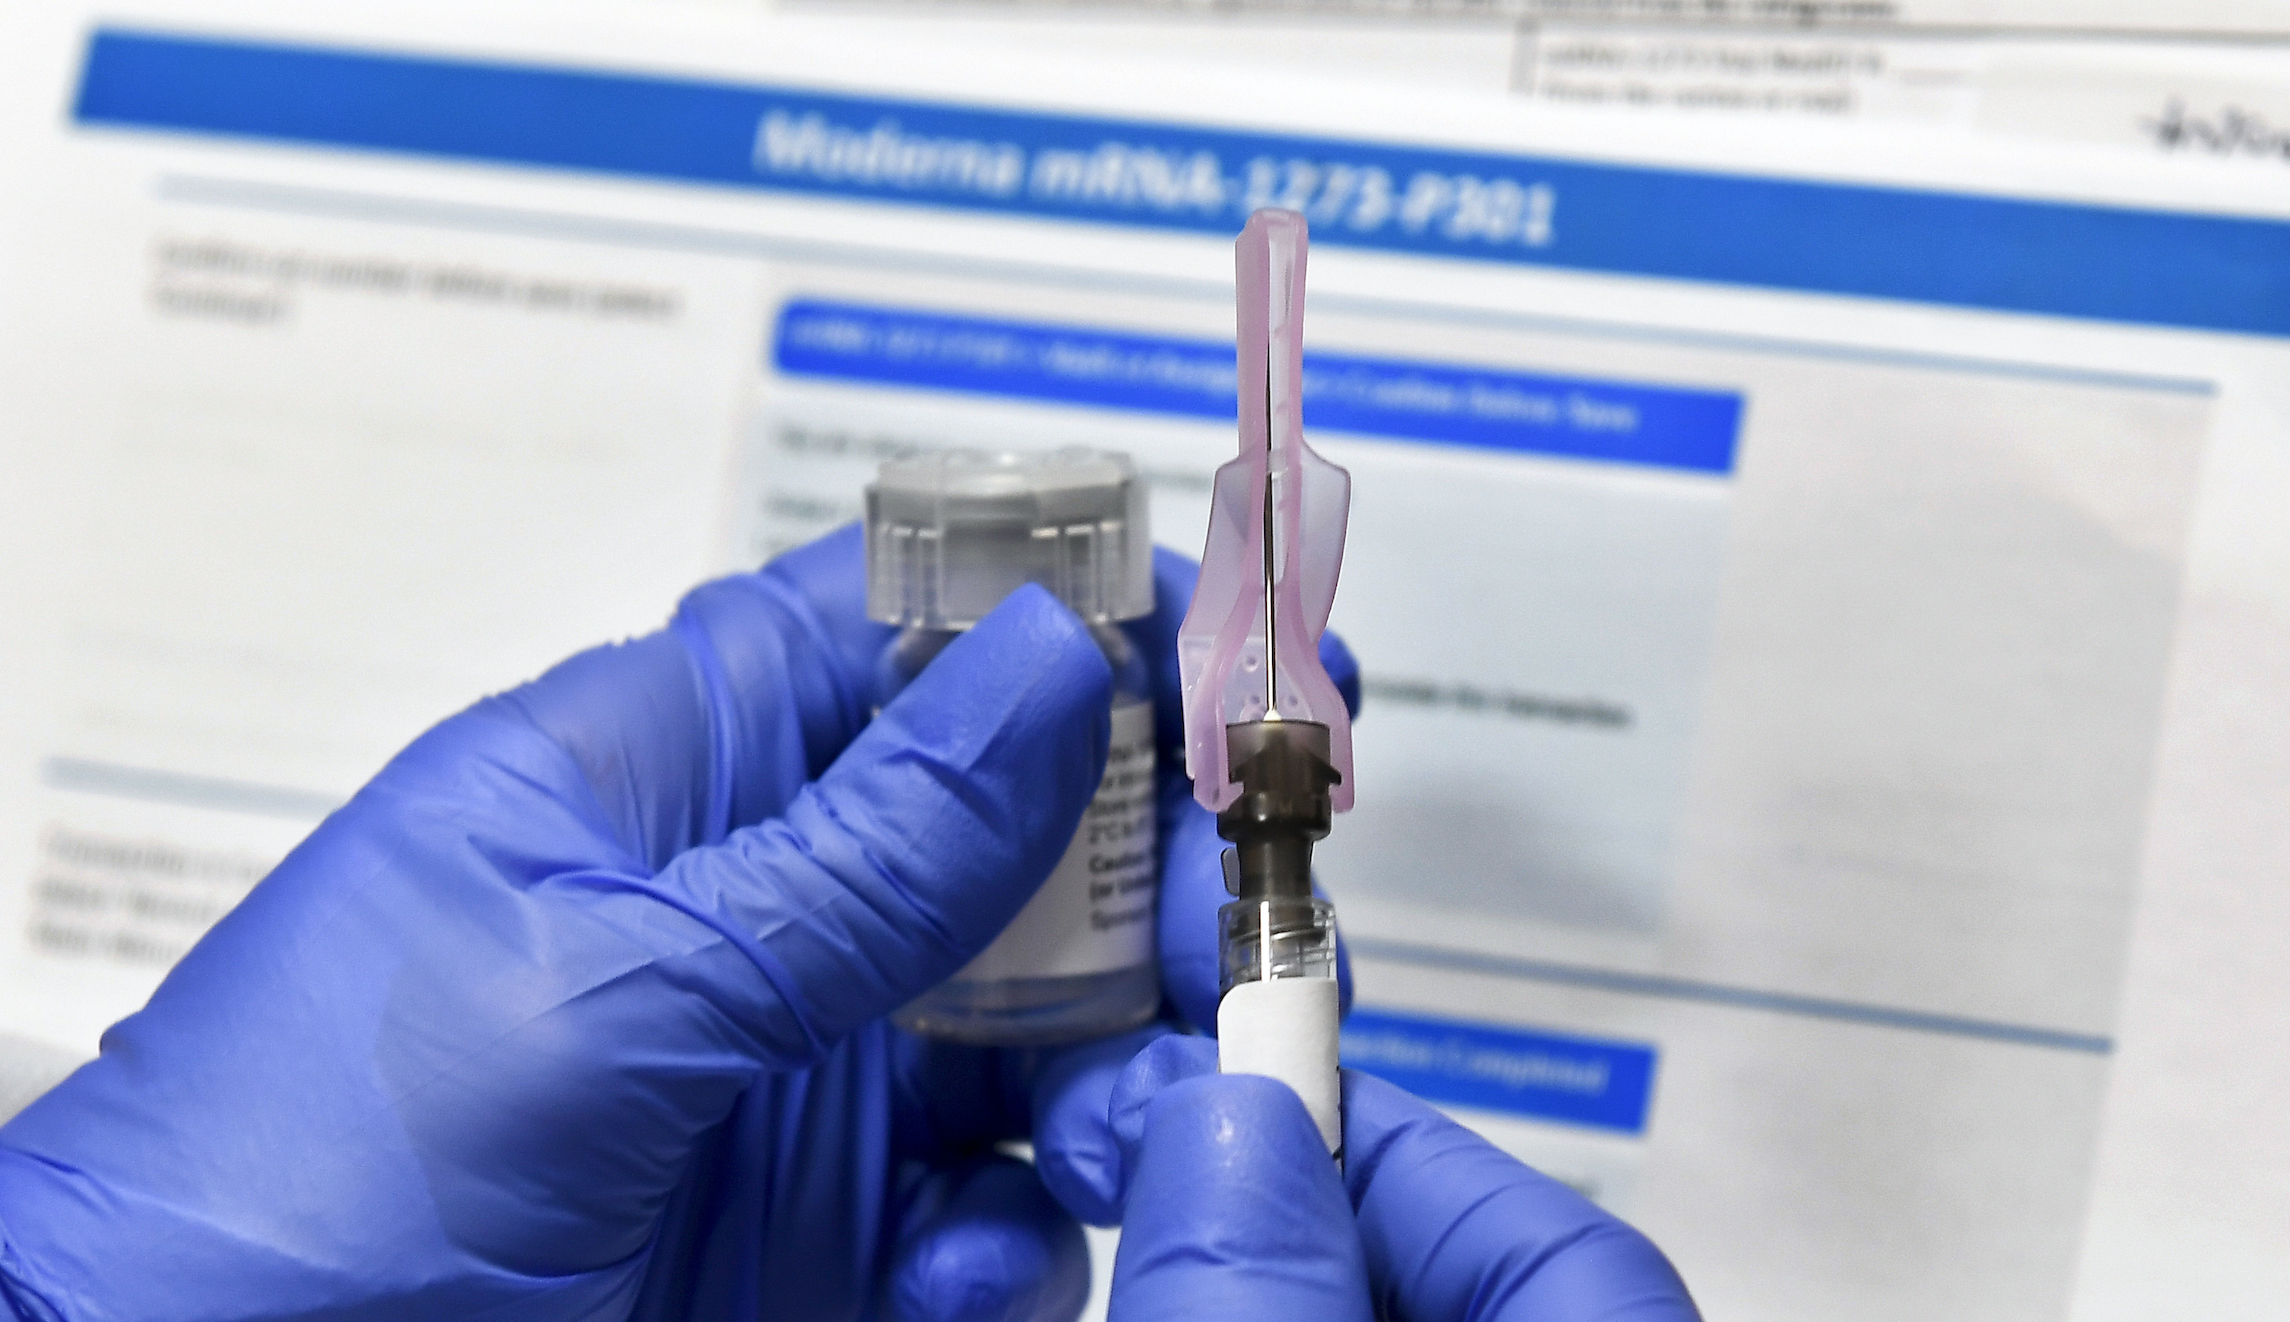 Republican states prepare for legal showdown over Biden vaccine mandate - Washington Examiner